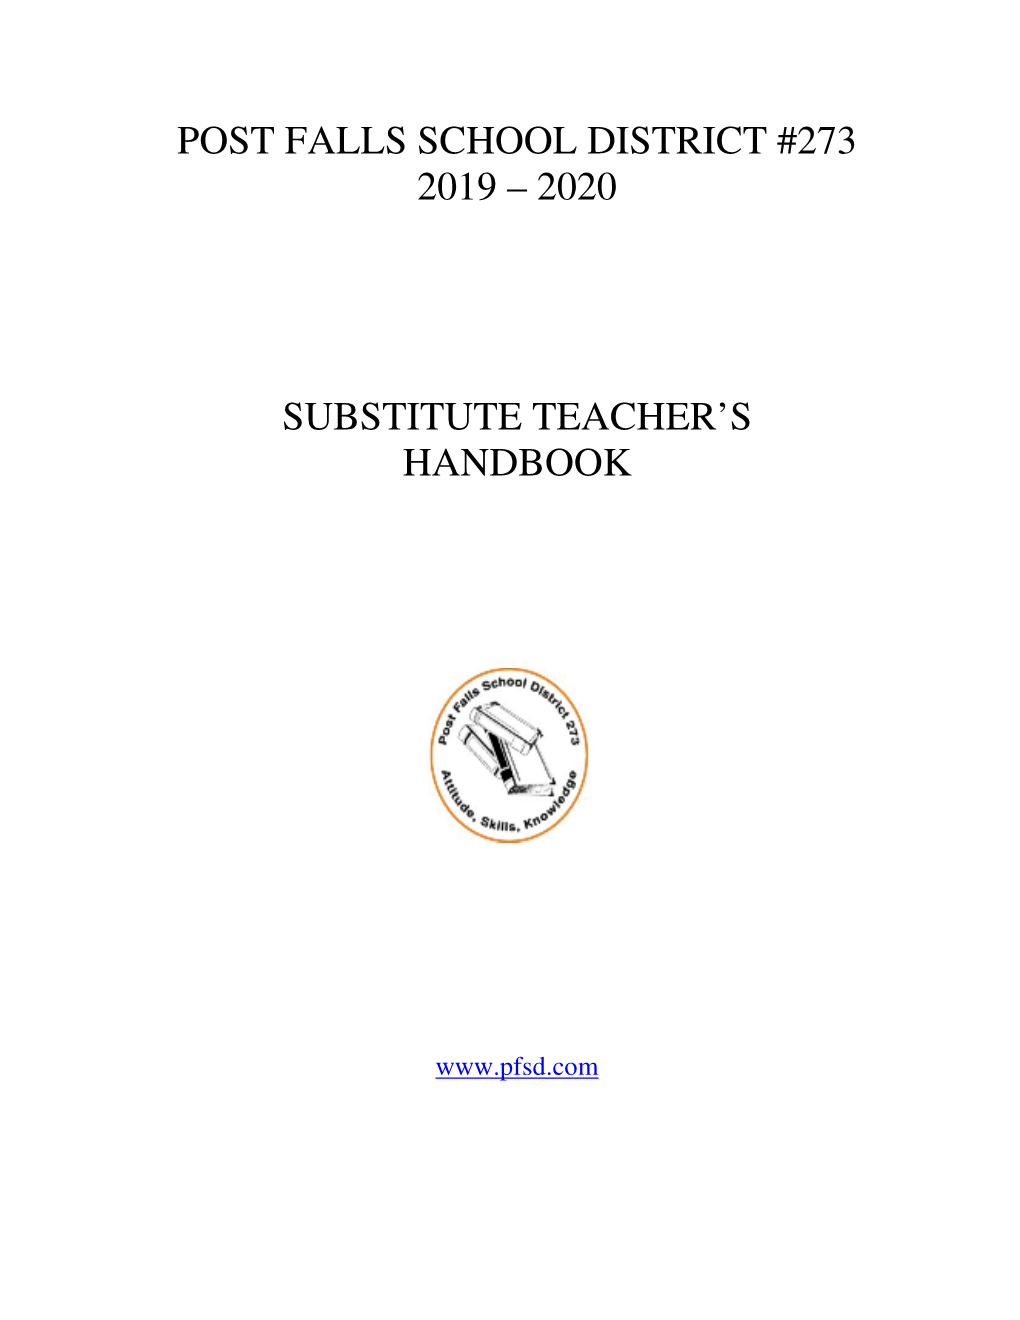 2020 Substitute Teacher's Handbook